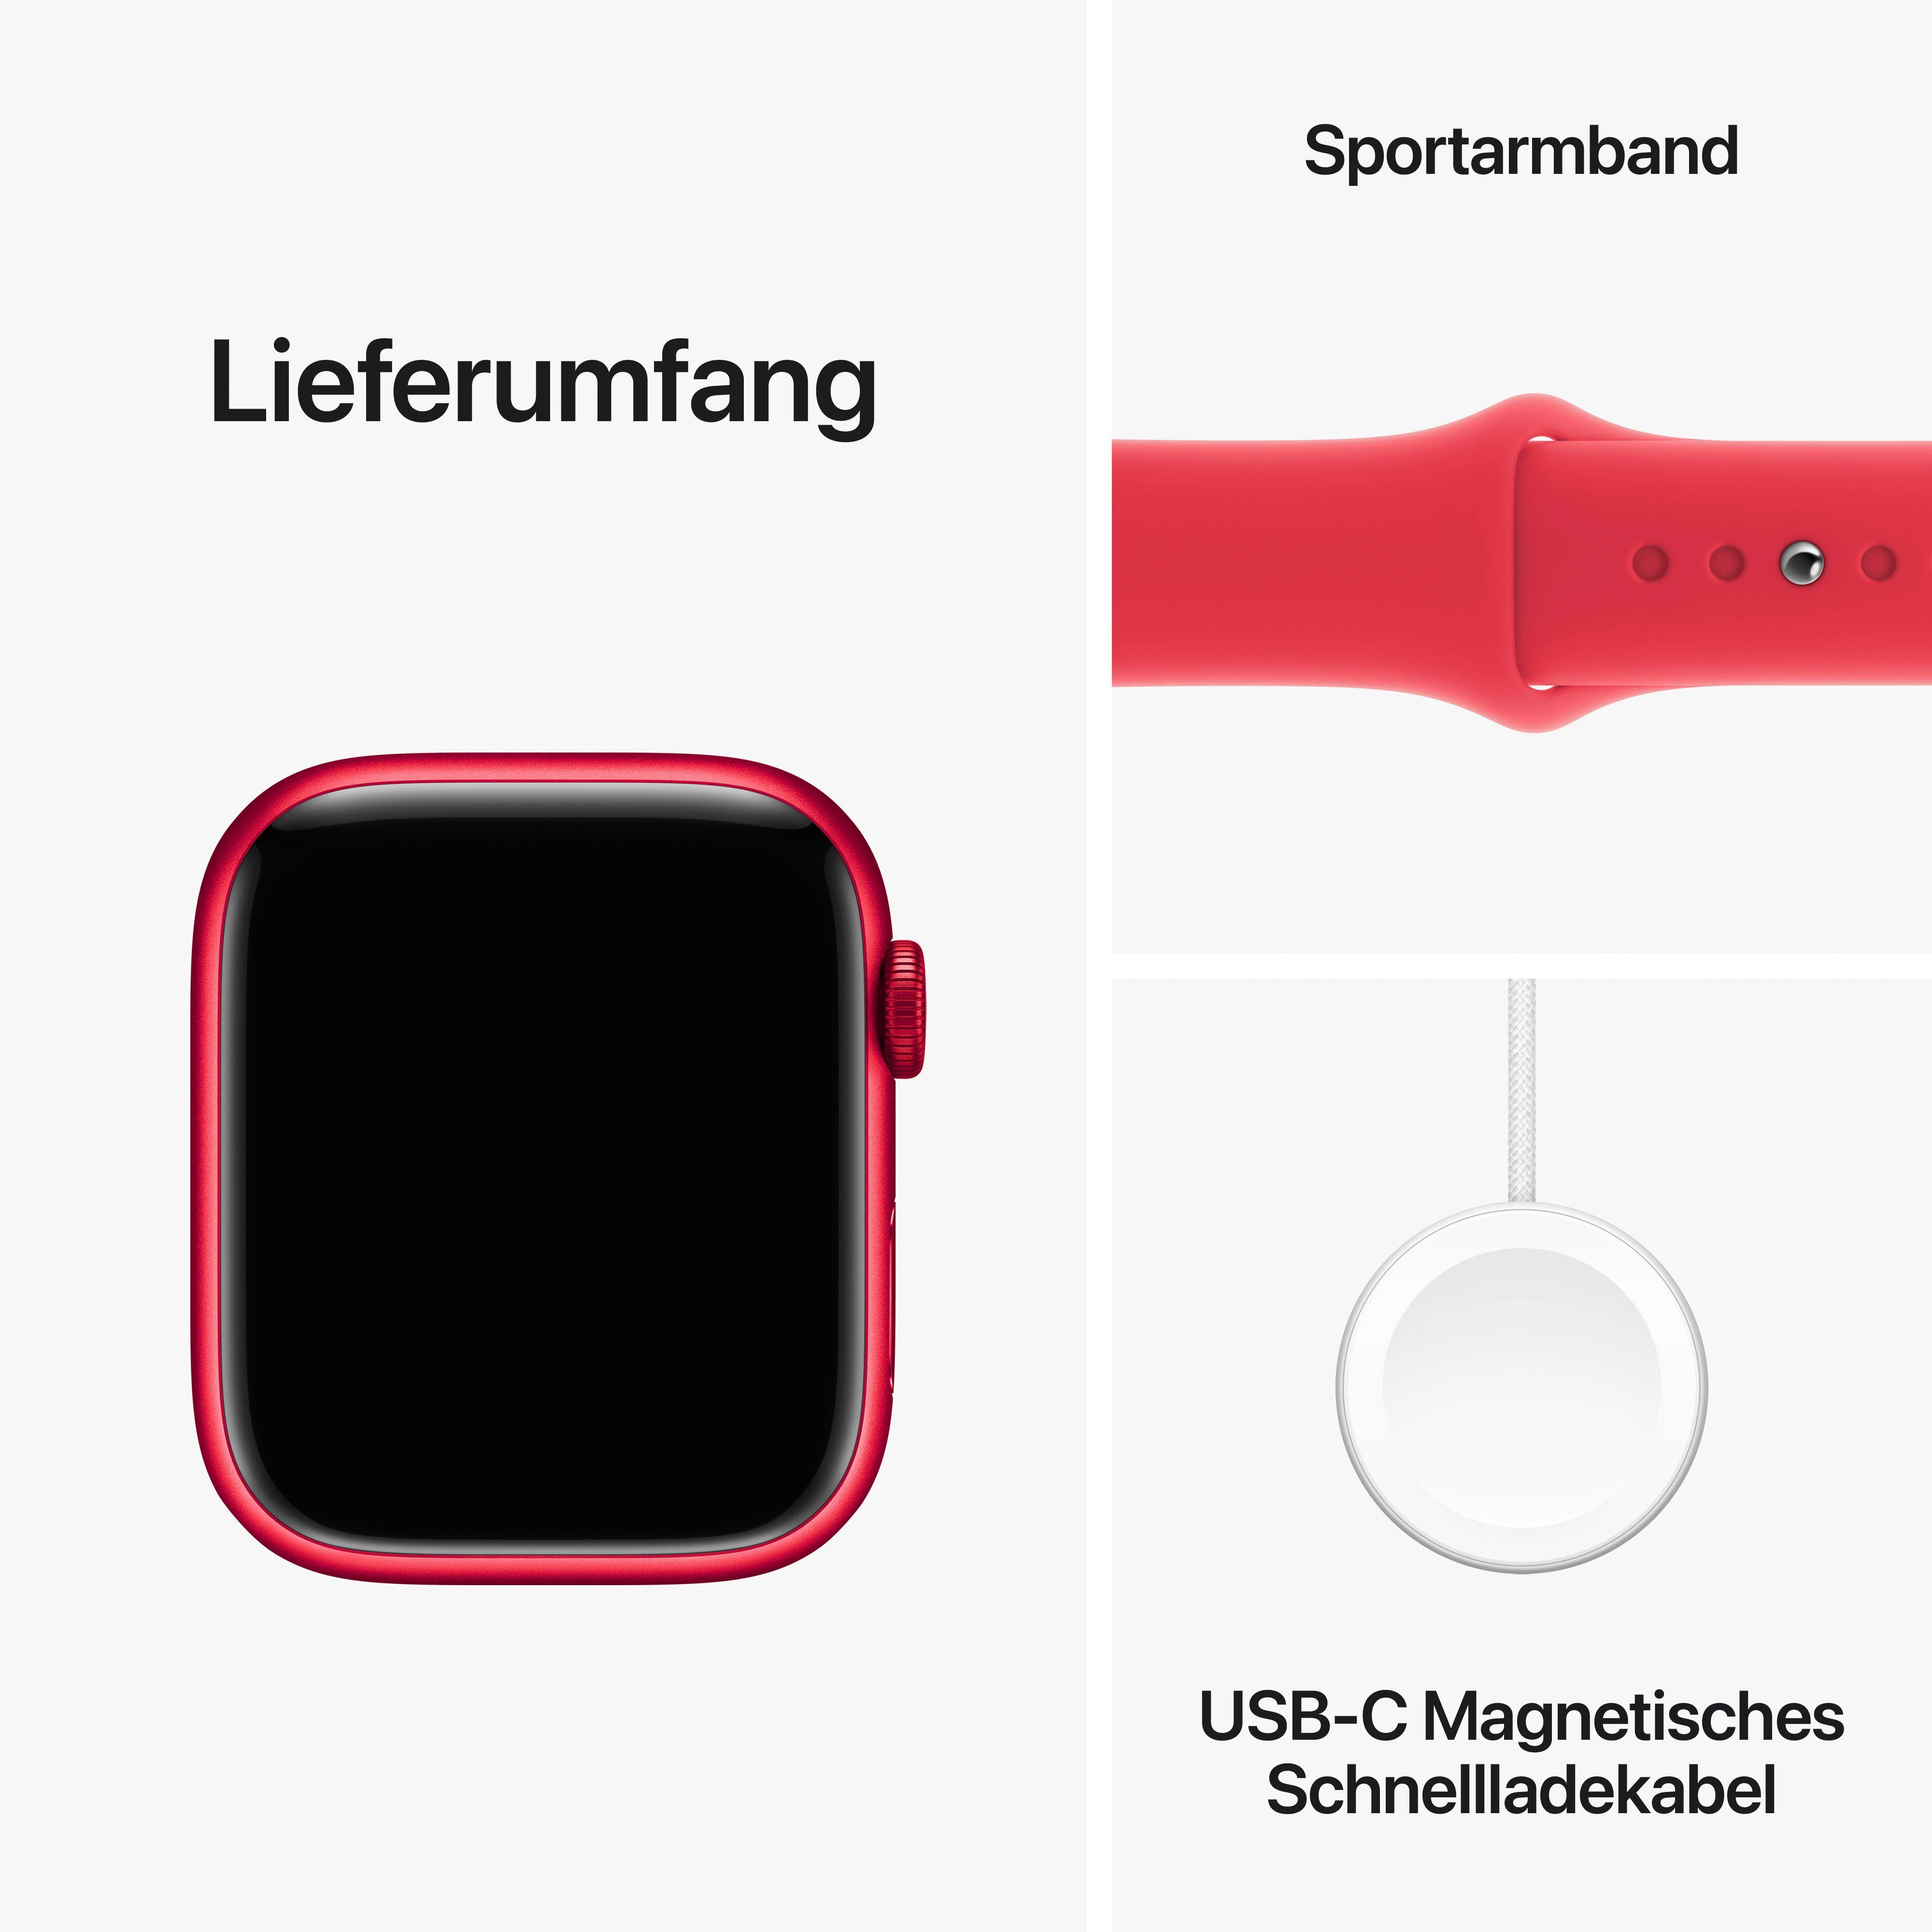 Apple 45mm Series GPS OS 9 Zoll, M/L Aluminium Smartwatch Band cm/1,77 Watch Sport (4,5 Watch 10),